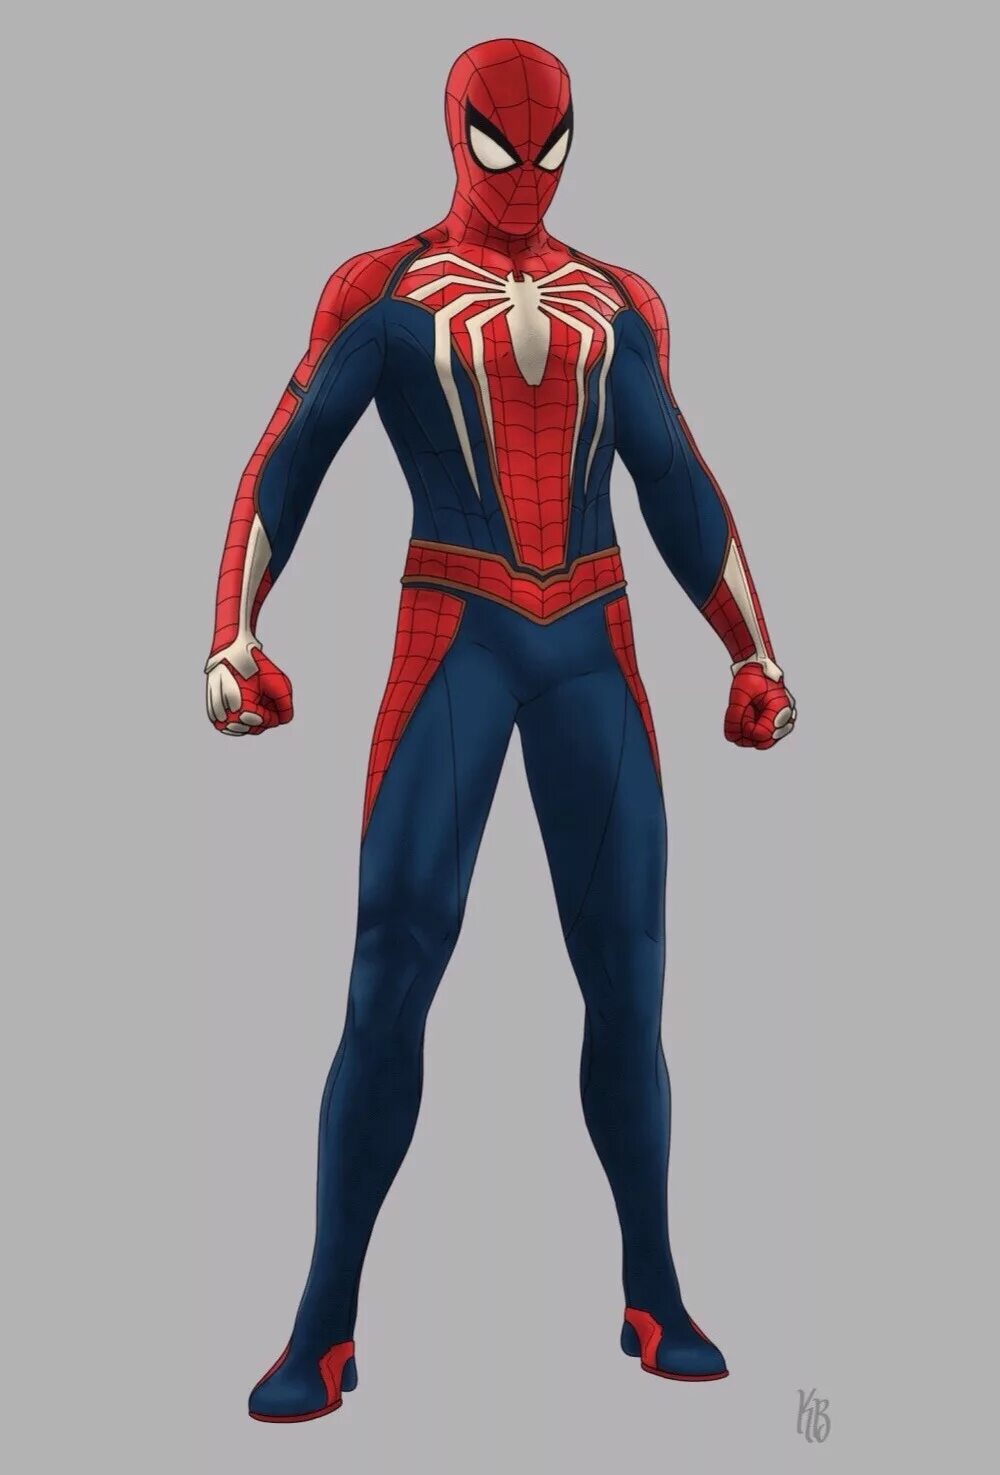 Spider man ps4 костюмы. Человек паук пс4 в полный рост. Marvel Spider man паутинный костюм. Spider man 2018 костюмы. Игра в синем костюме